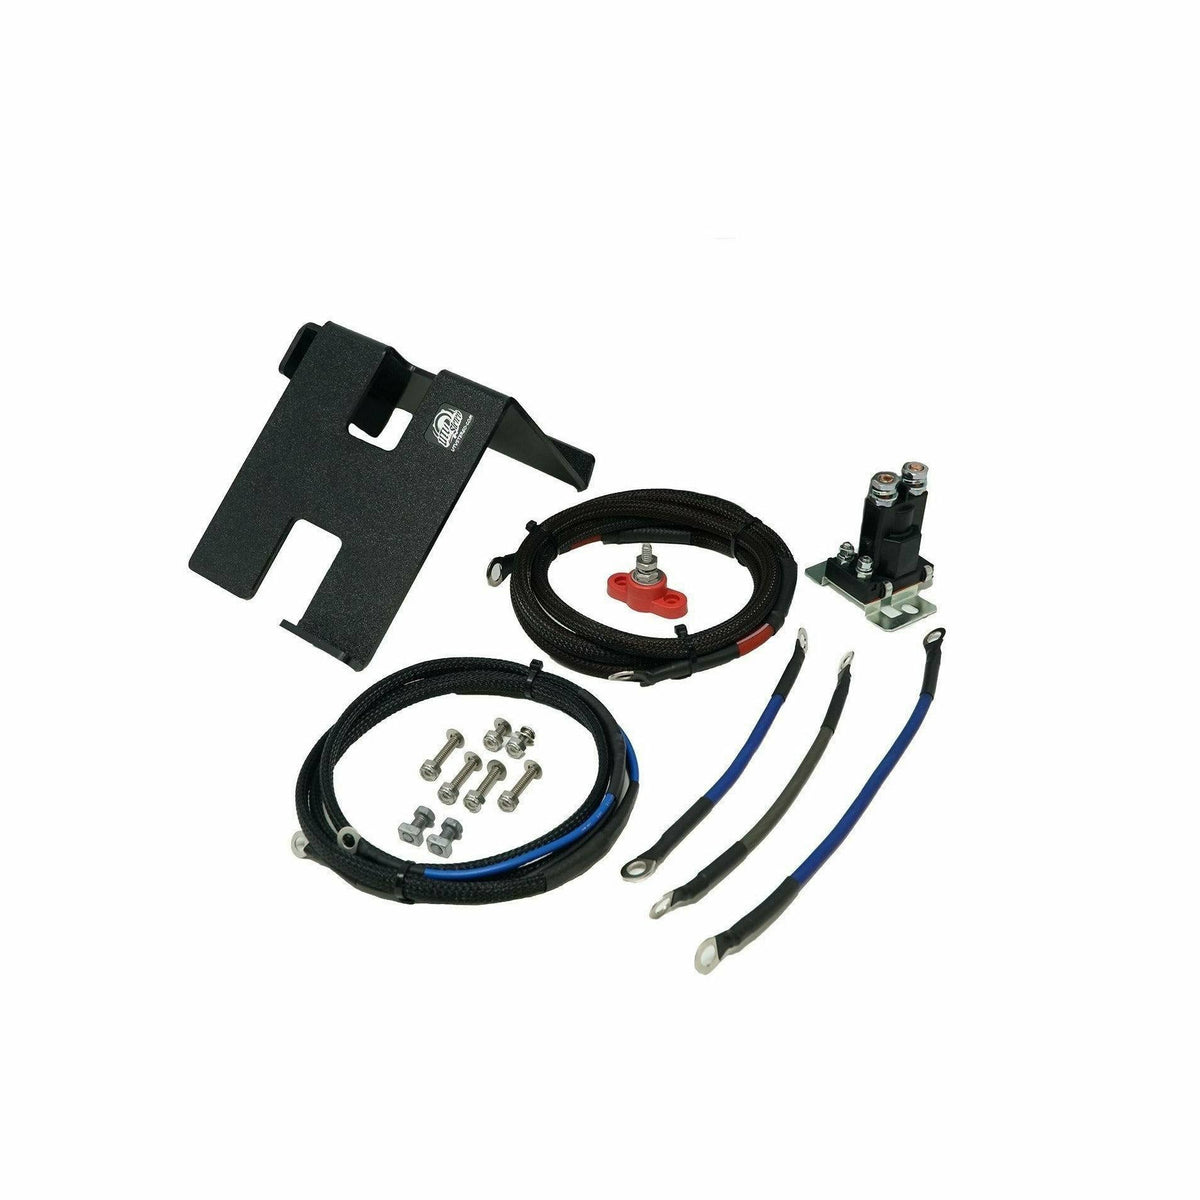 UTV Stereo Can Am Maverick X3 2nd Battery Kit (Wire Kit & Battery Mount Only) - Kombustion Motorsports